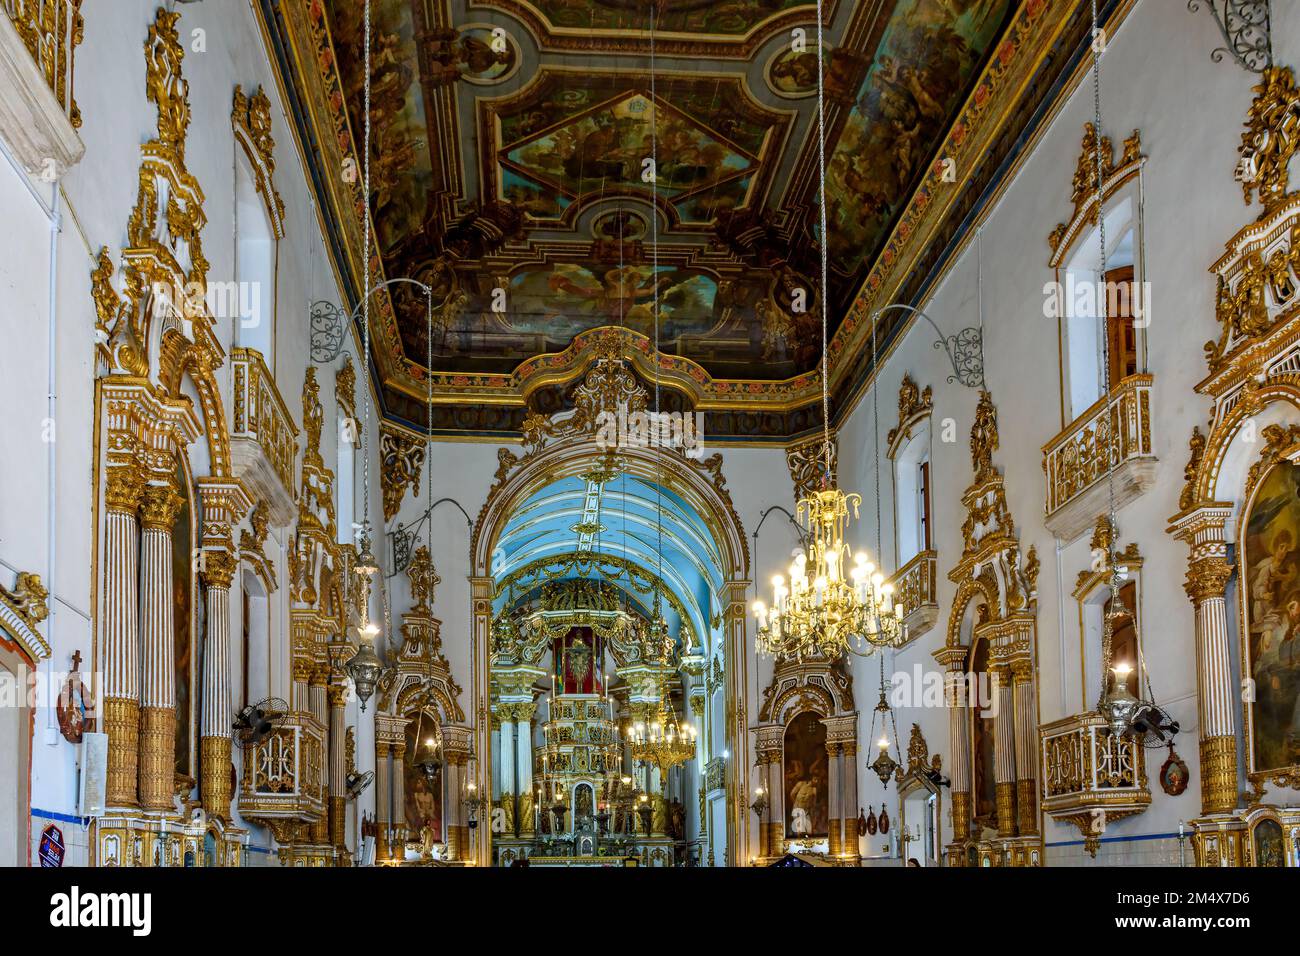 Innenbereich und Altar der berühmten Kirche Bonfim in Salvador, Bahia, dekoriert mit barocker Kunst und vergoldeten Details Stockfoto